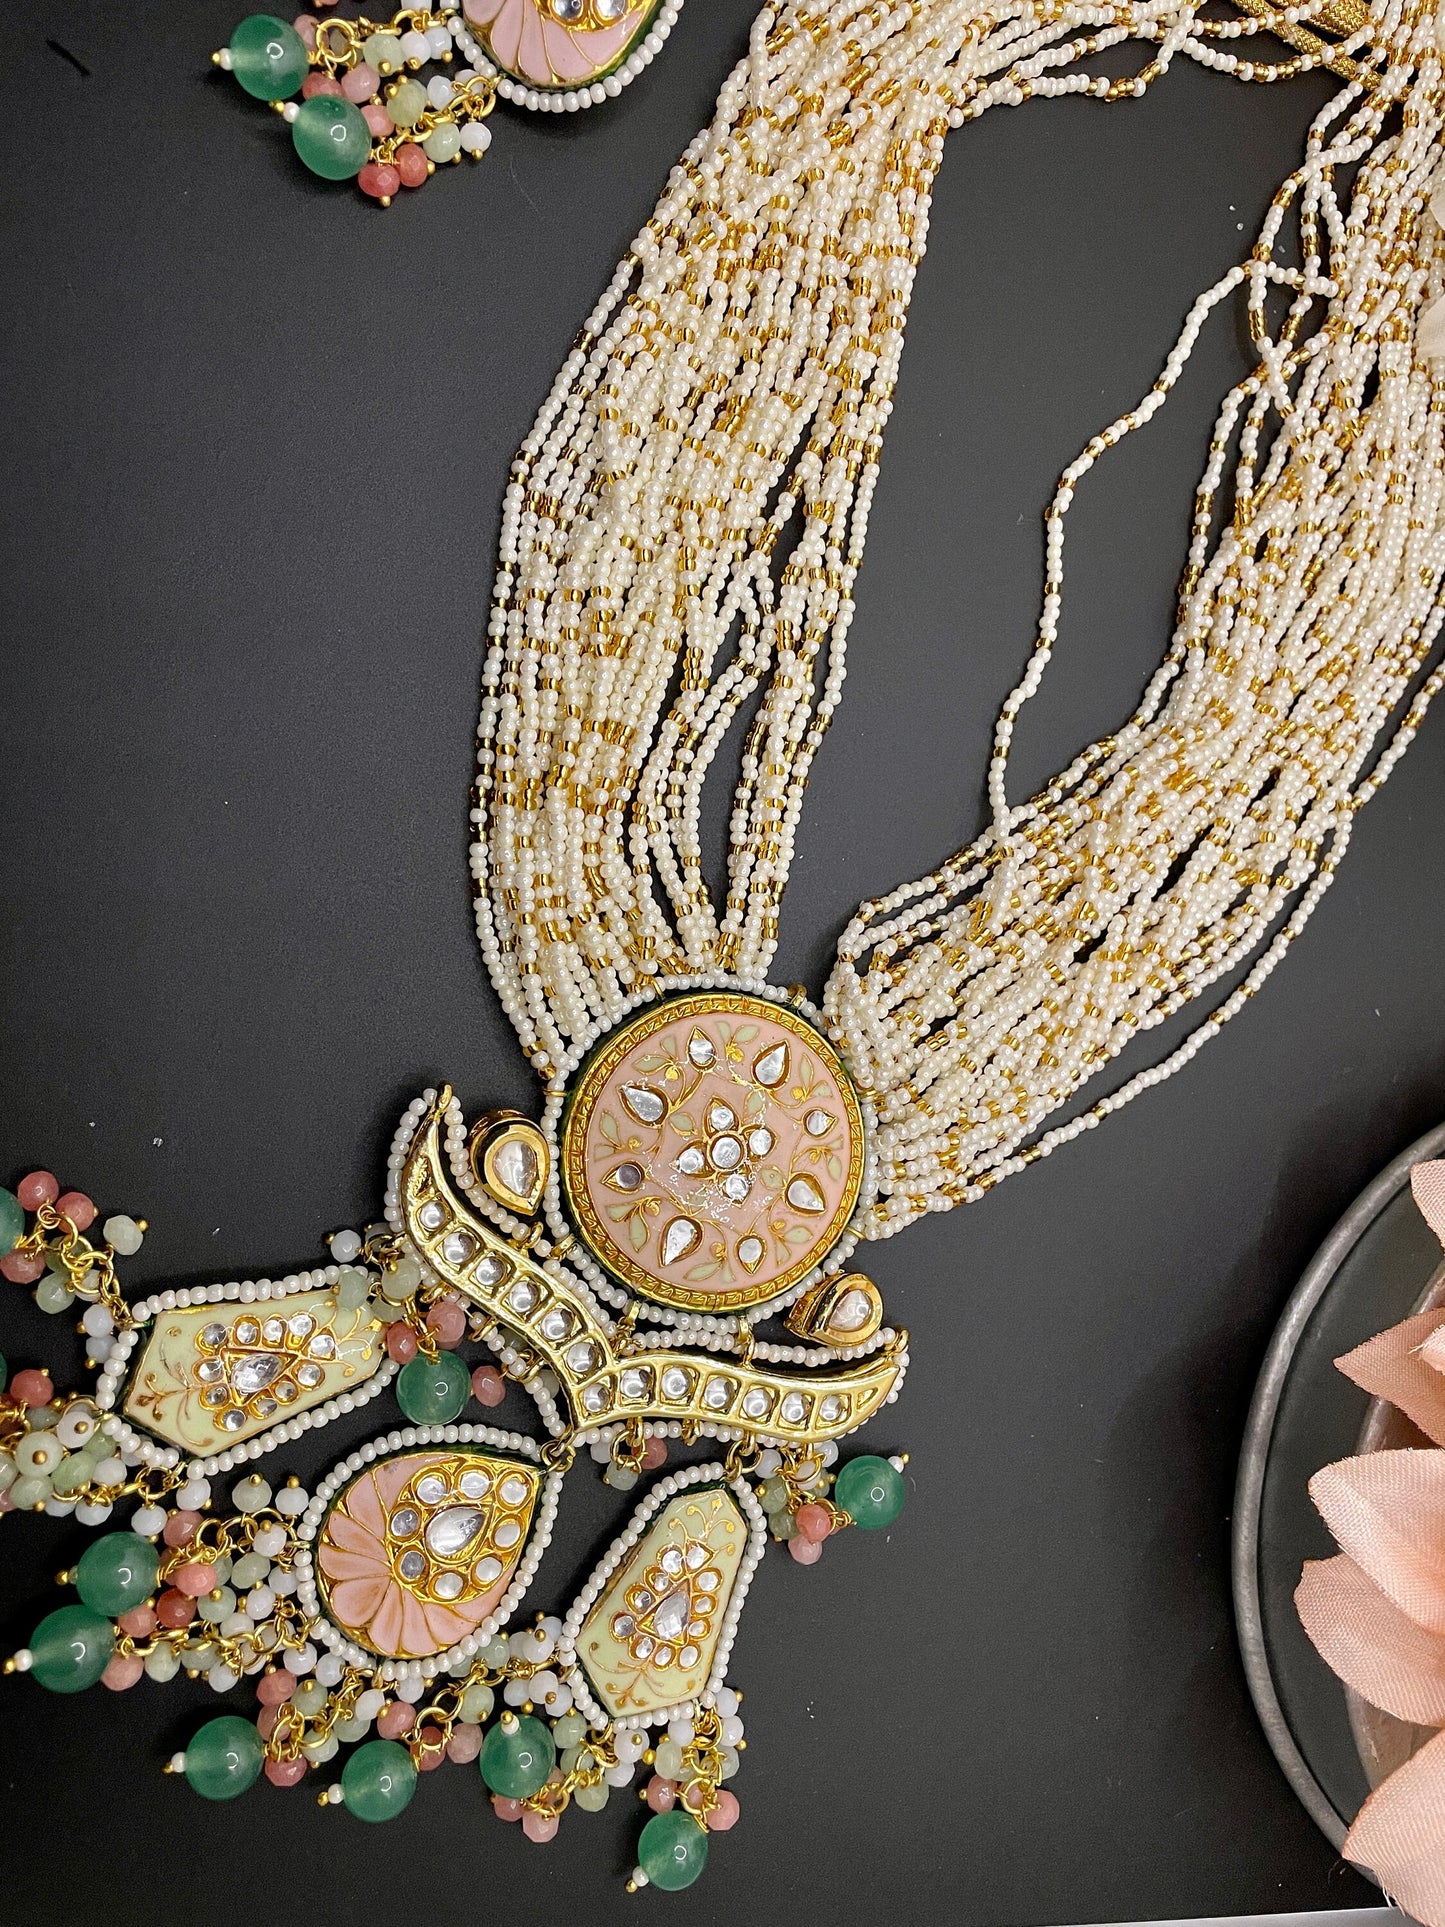 Joyería Rajasthani/Collar Meenakari/Joyería india de Bollywood/Collar nupcial indio/Joyería Mehendi/Collar indio único brillante jhumka